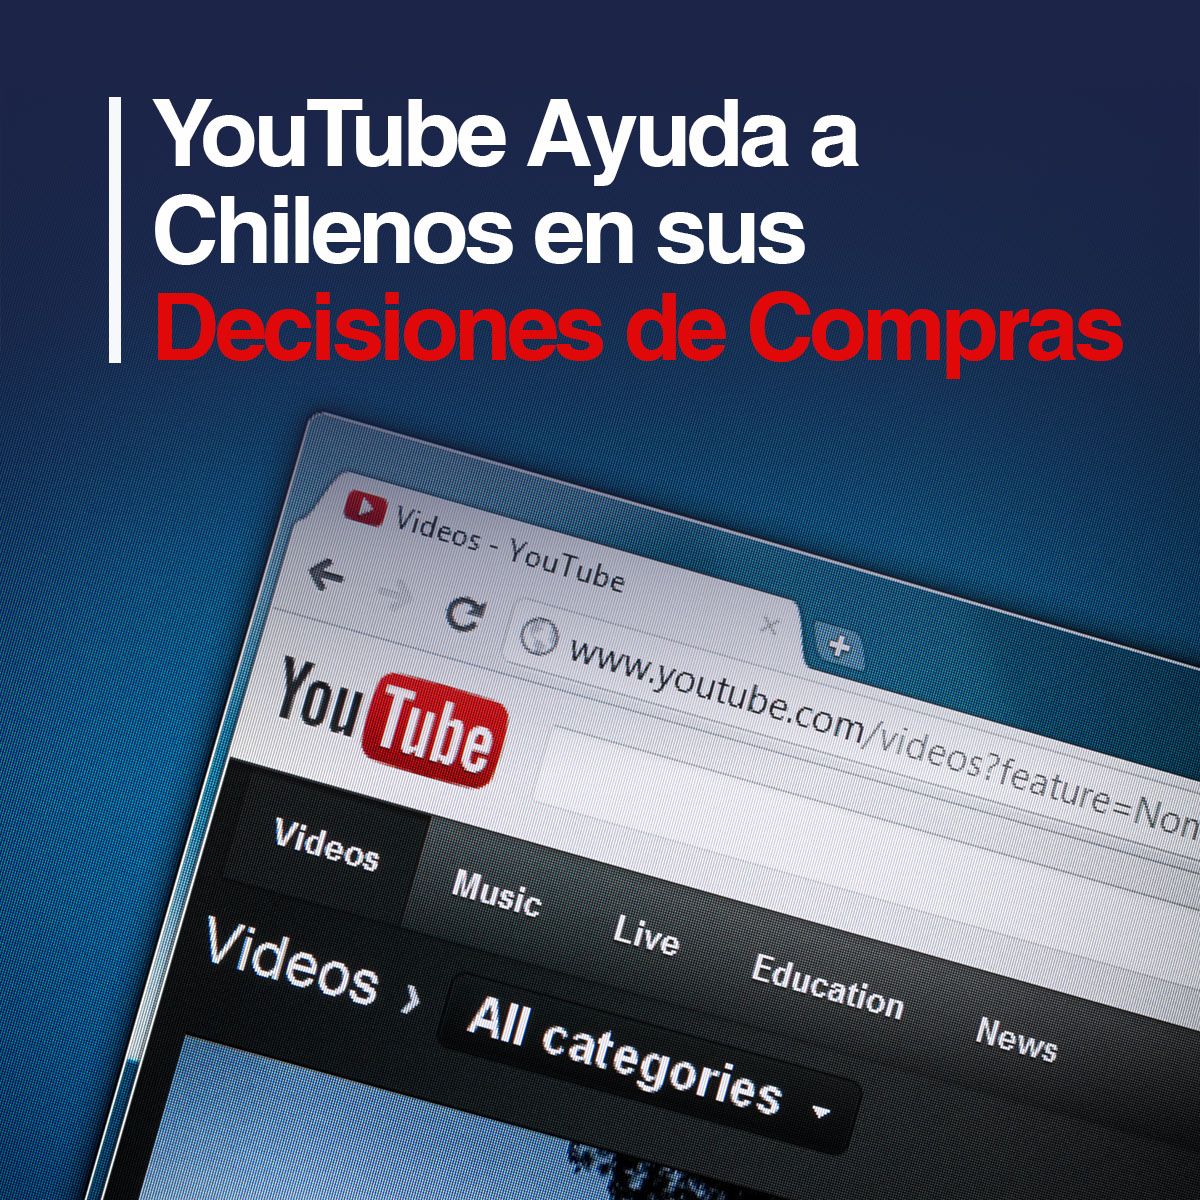 YouTube Ayuda a Chilenos en sus Decisiones de Compras